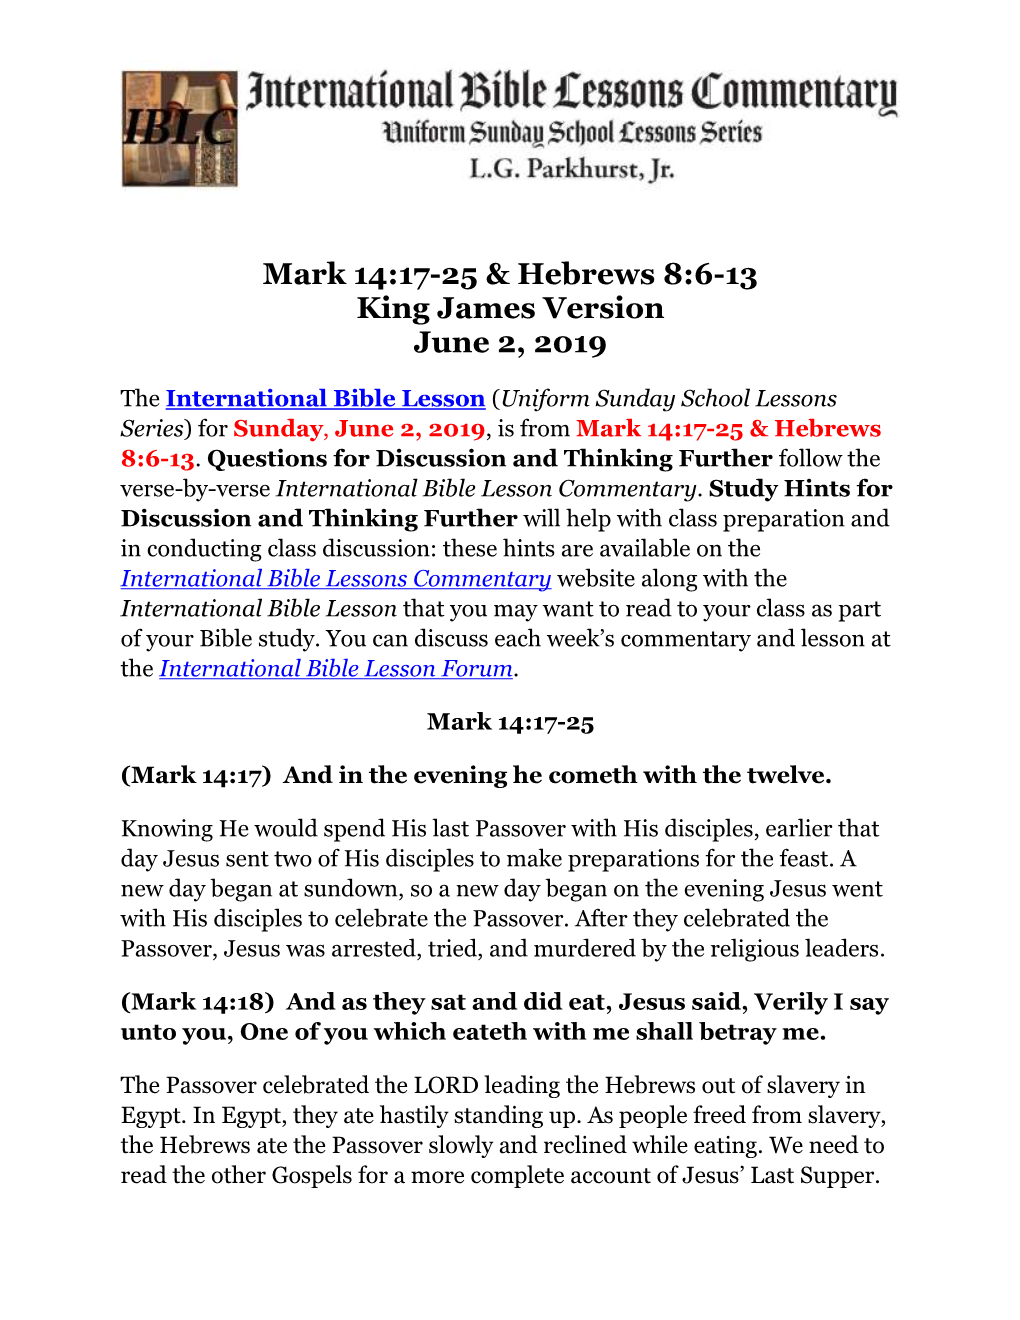 Mark 14:17-25 & Hebrews 8:6-13 King James Version June 2, 2019